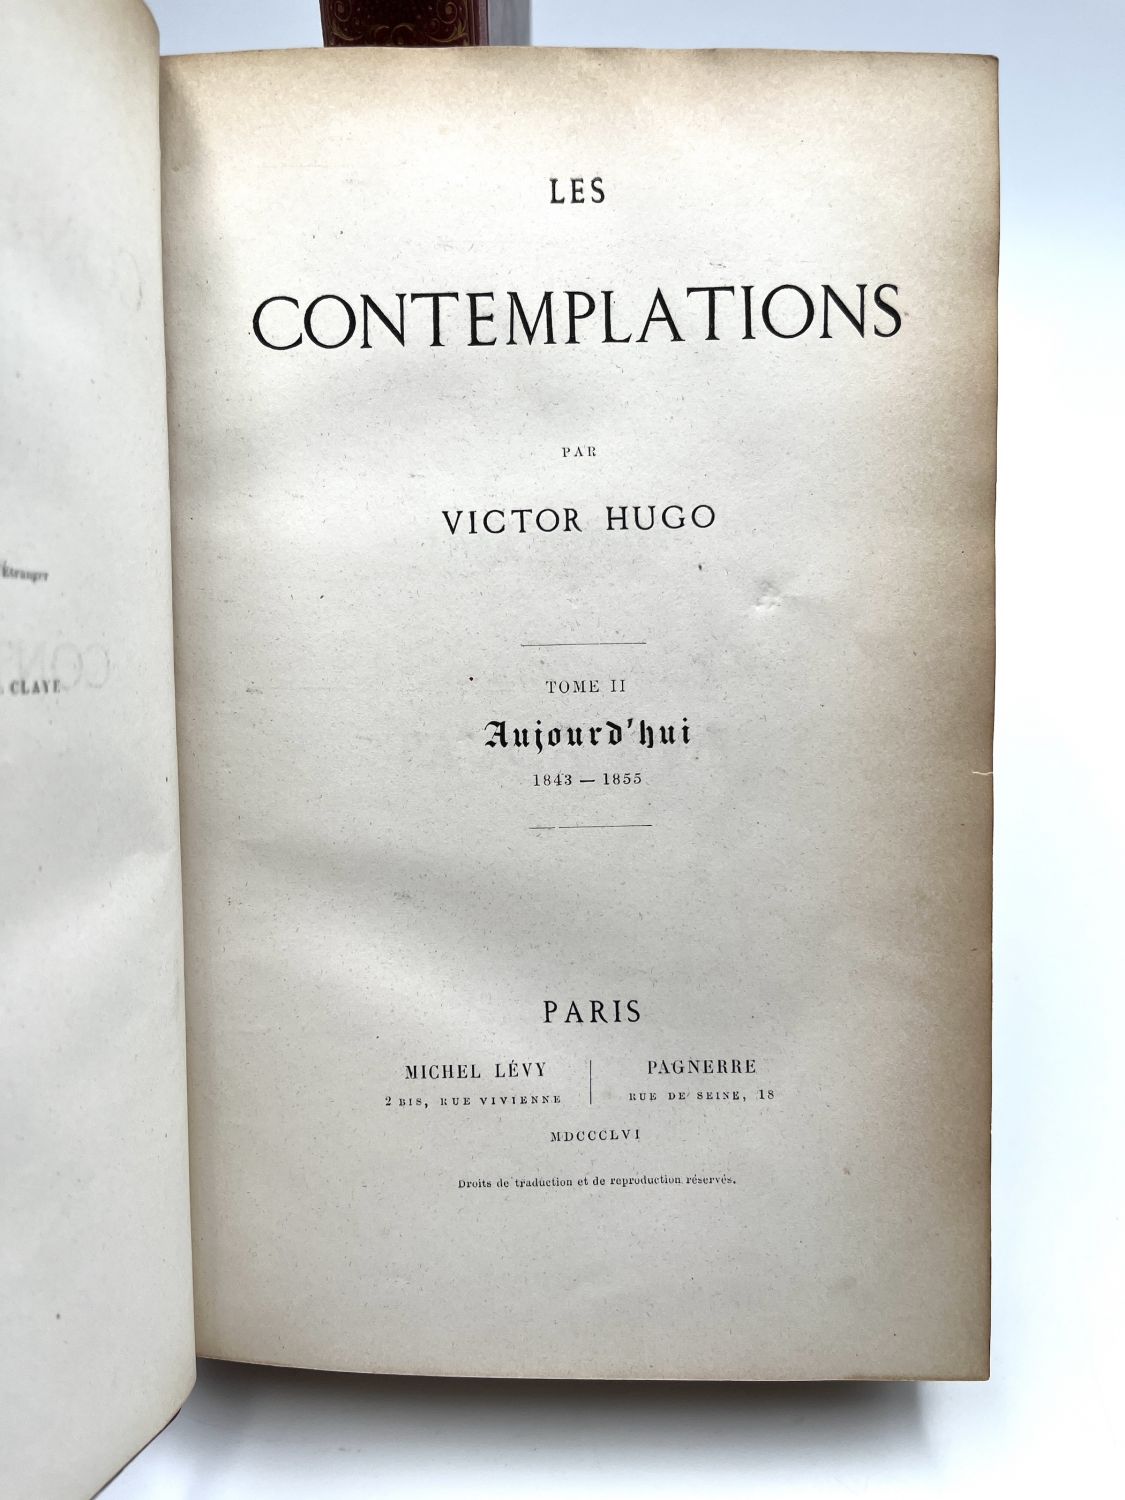 dissertation sur les contemplations de victor hugo